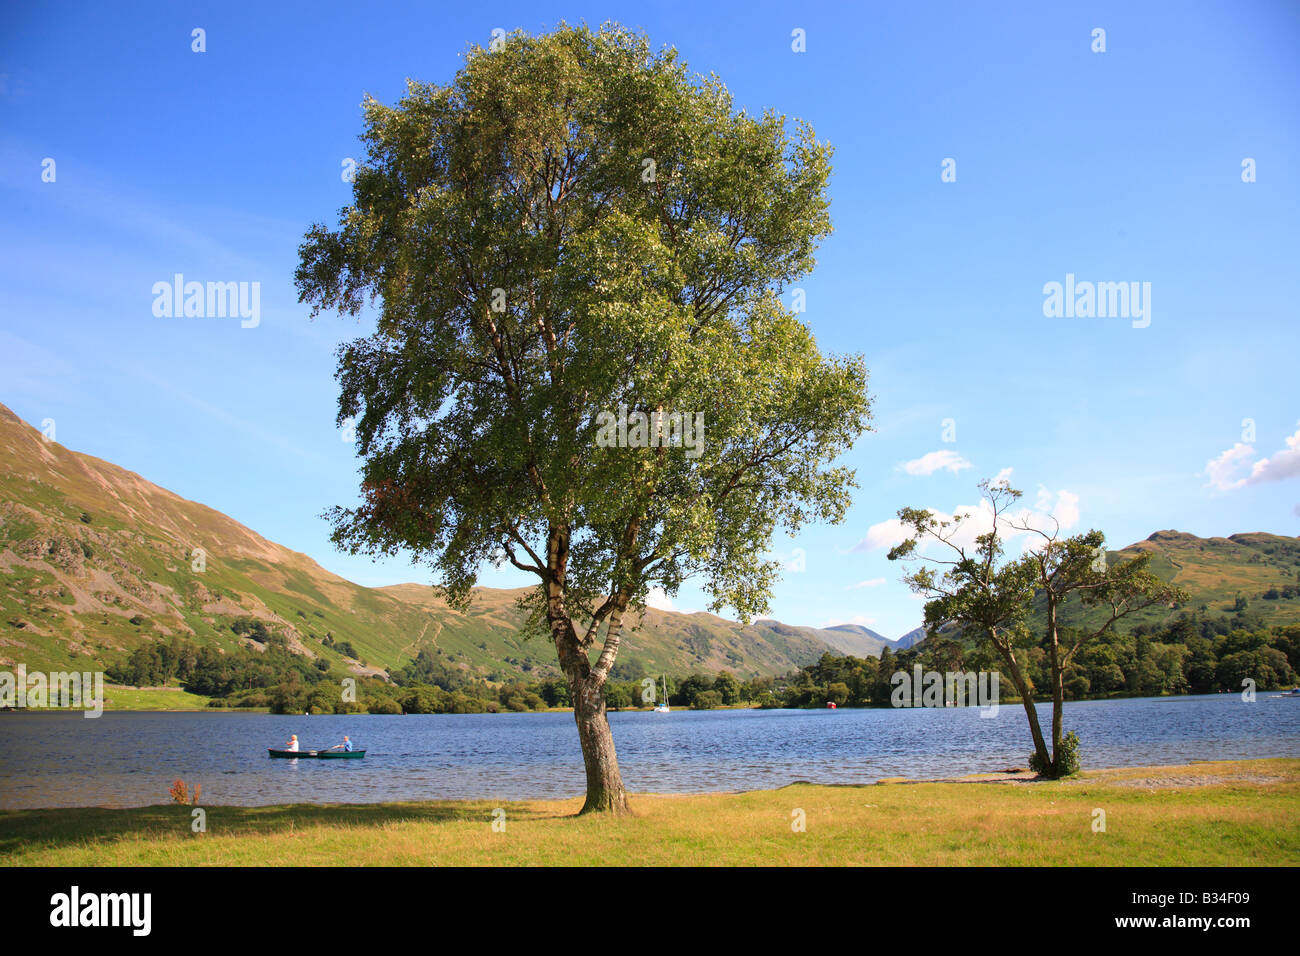 Silver Birch Tree am Ufer eines Sees mit zwei Personen Rudersport in der Ferne an einem Sommertag. Stockfoto